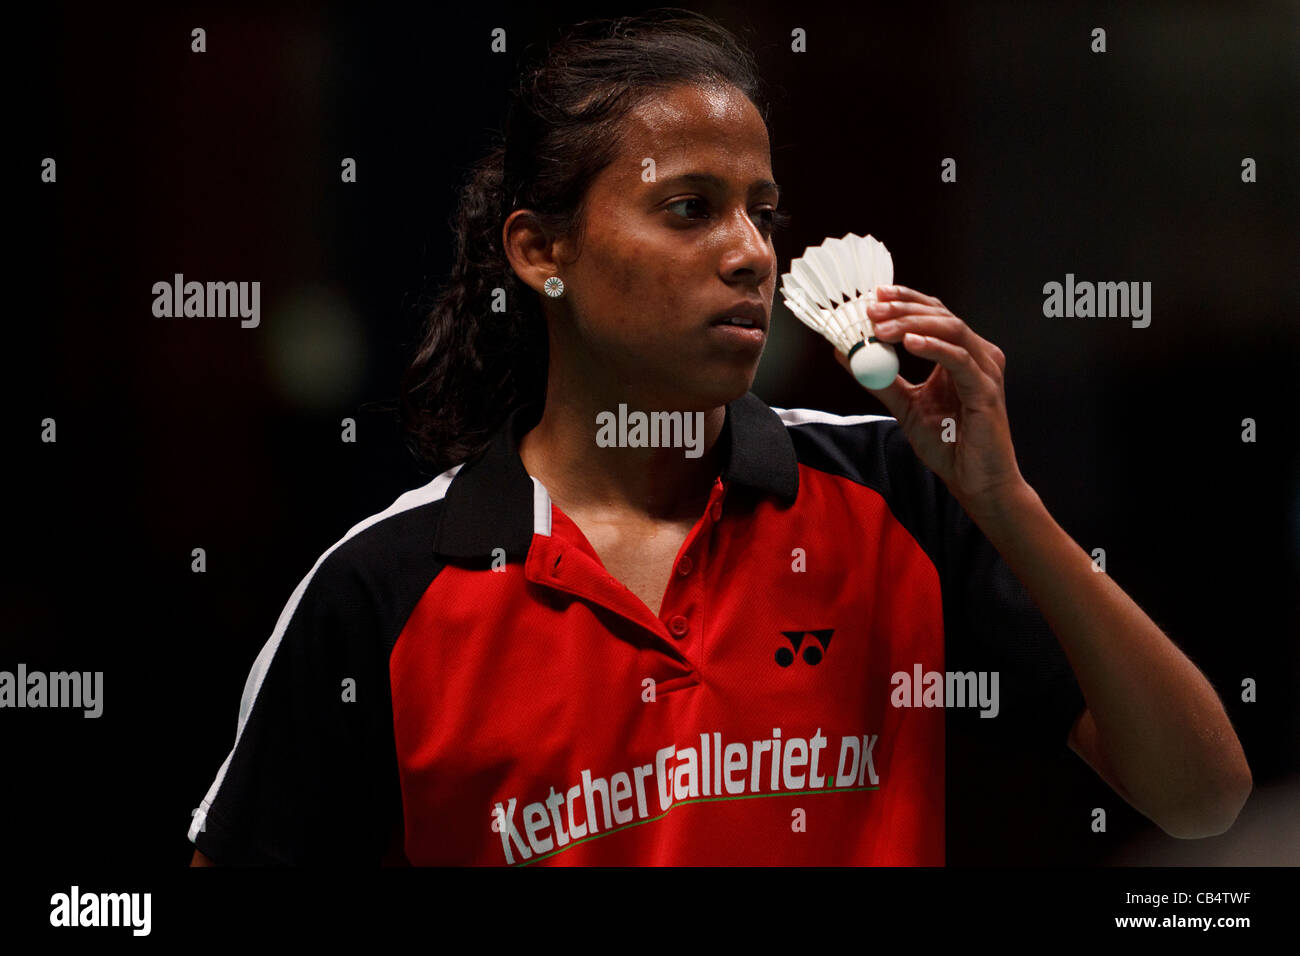 modtagende købmand Udløbet Badminton player Karina Jorgensen from Denmark Stock Photo - Alamy